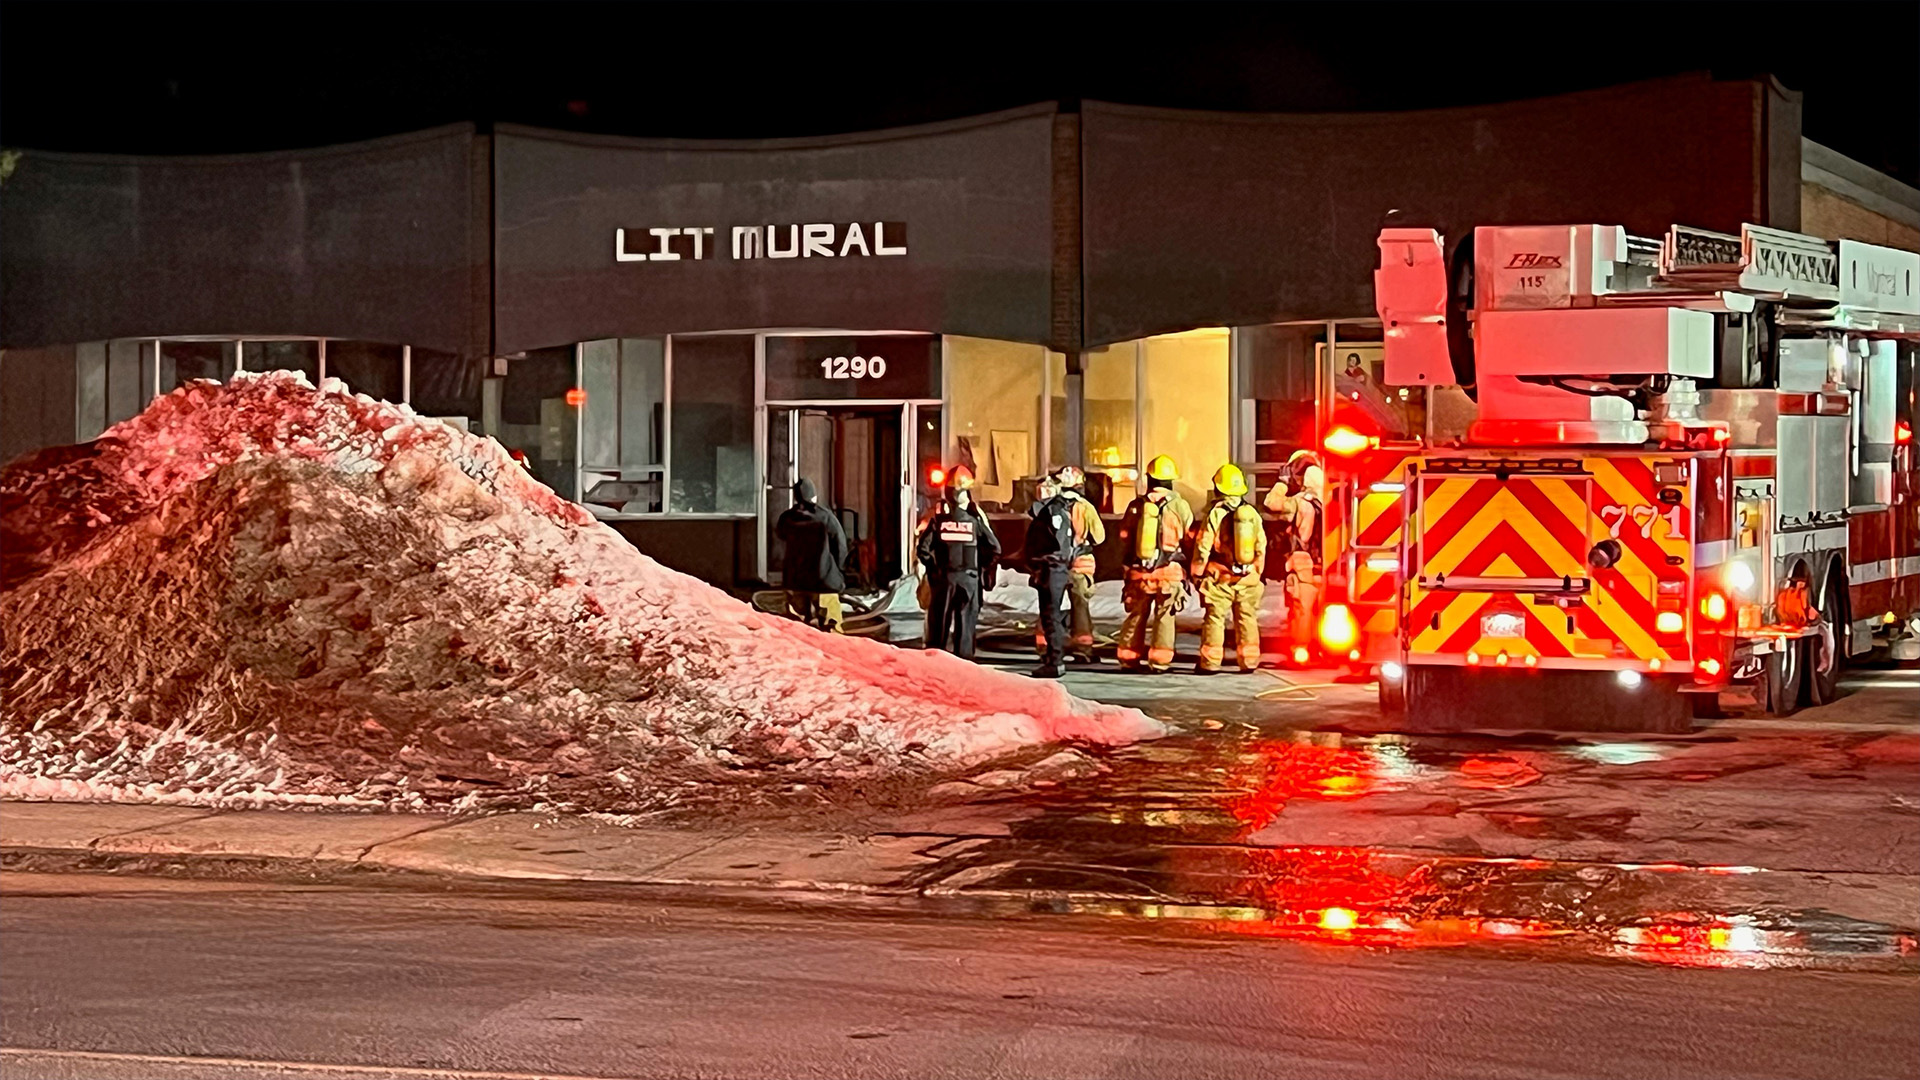 Pour une seconde fois en moins de trois semaines, un incendie allumé par une main criminelle a causé des dégâts à un immeuble commercial d’un même secteur industriel de l’arrondissement de Saint-Laurent, tôt mardi matin, dans le nord-ouest de Montréal.